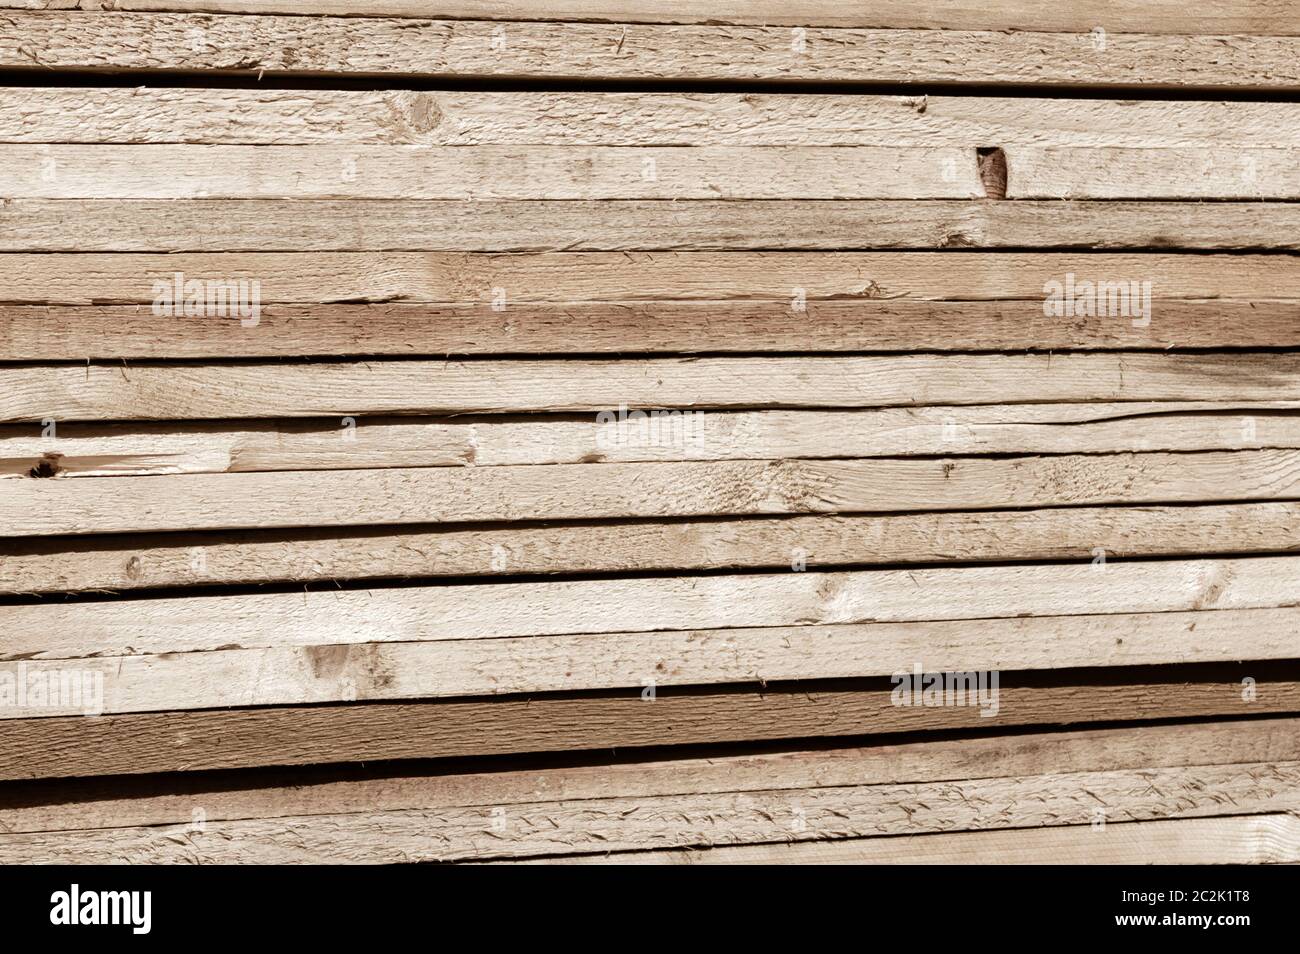 Pile de bois contreplaqué obsolètes de nombreux bois planches empilées dans une rangée. Abstract texture background. Copy Space Banque D'Images